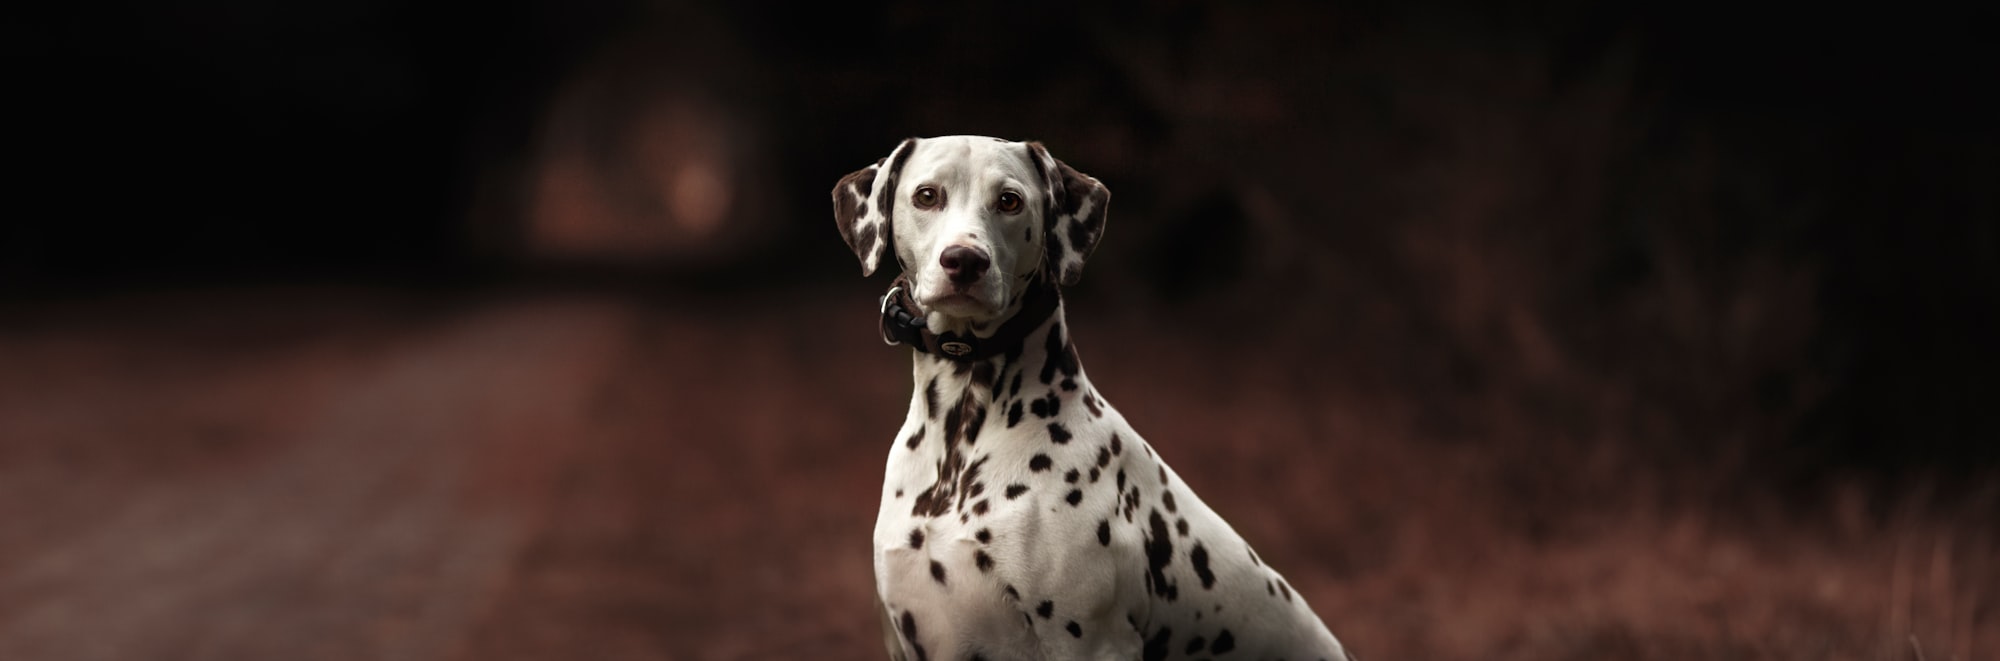 Are Dalmatian Dogs Smart